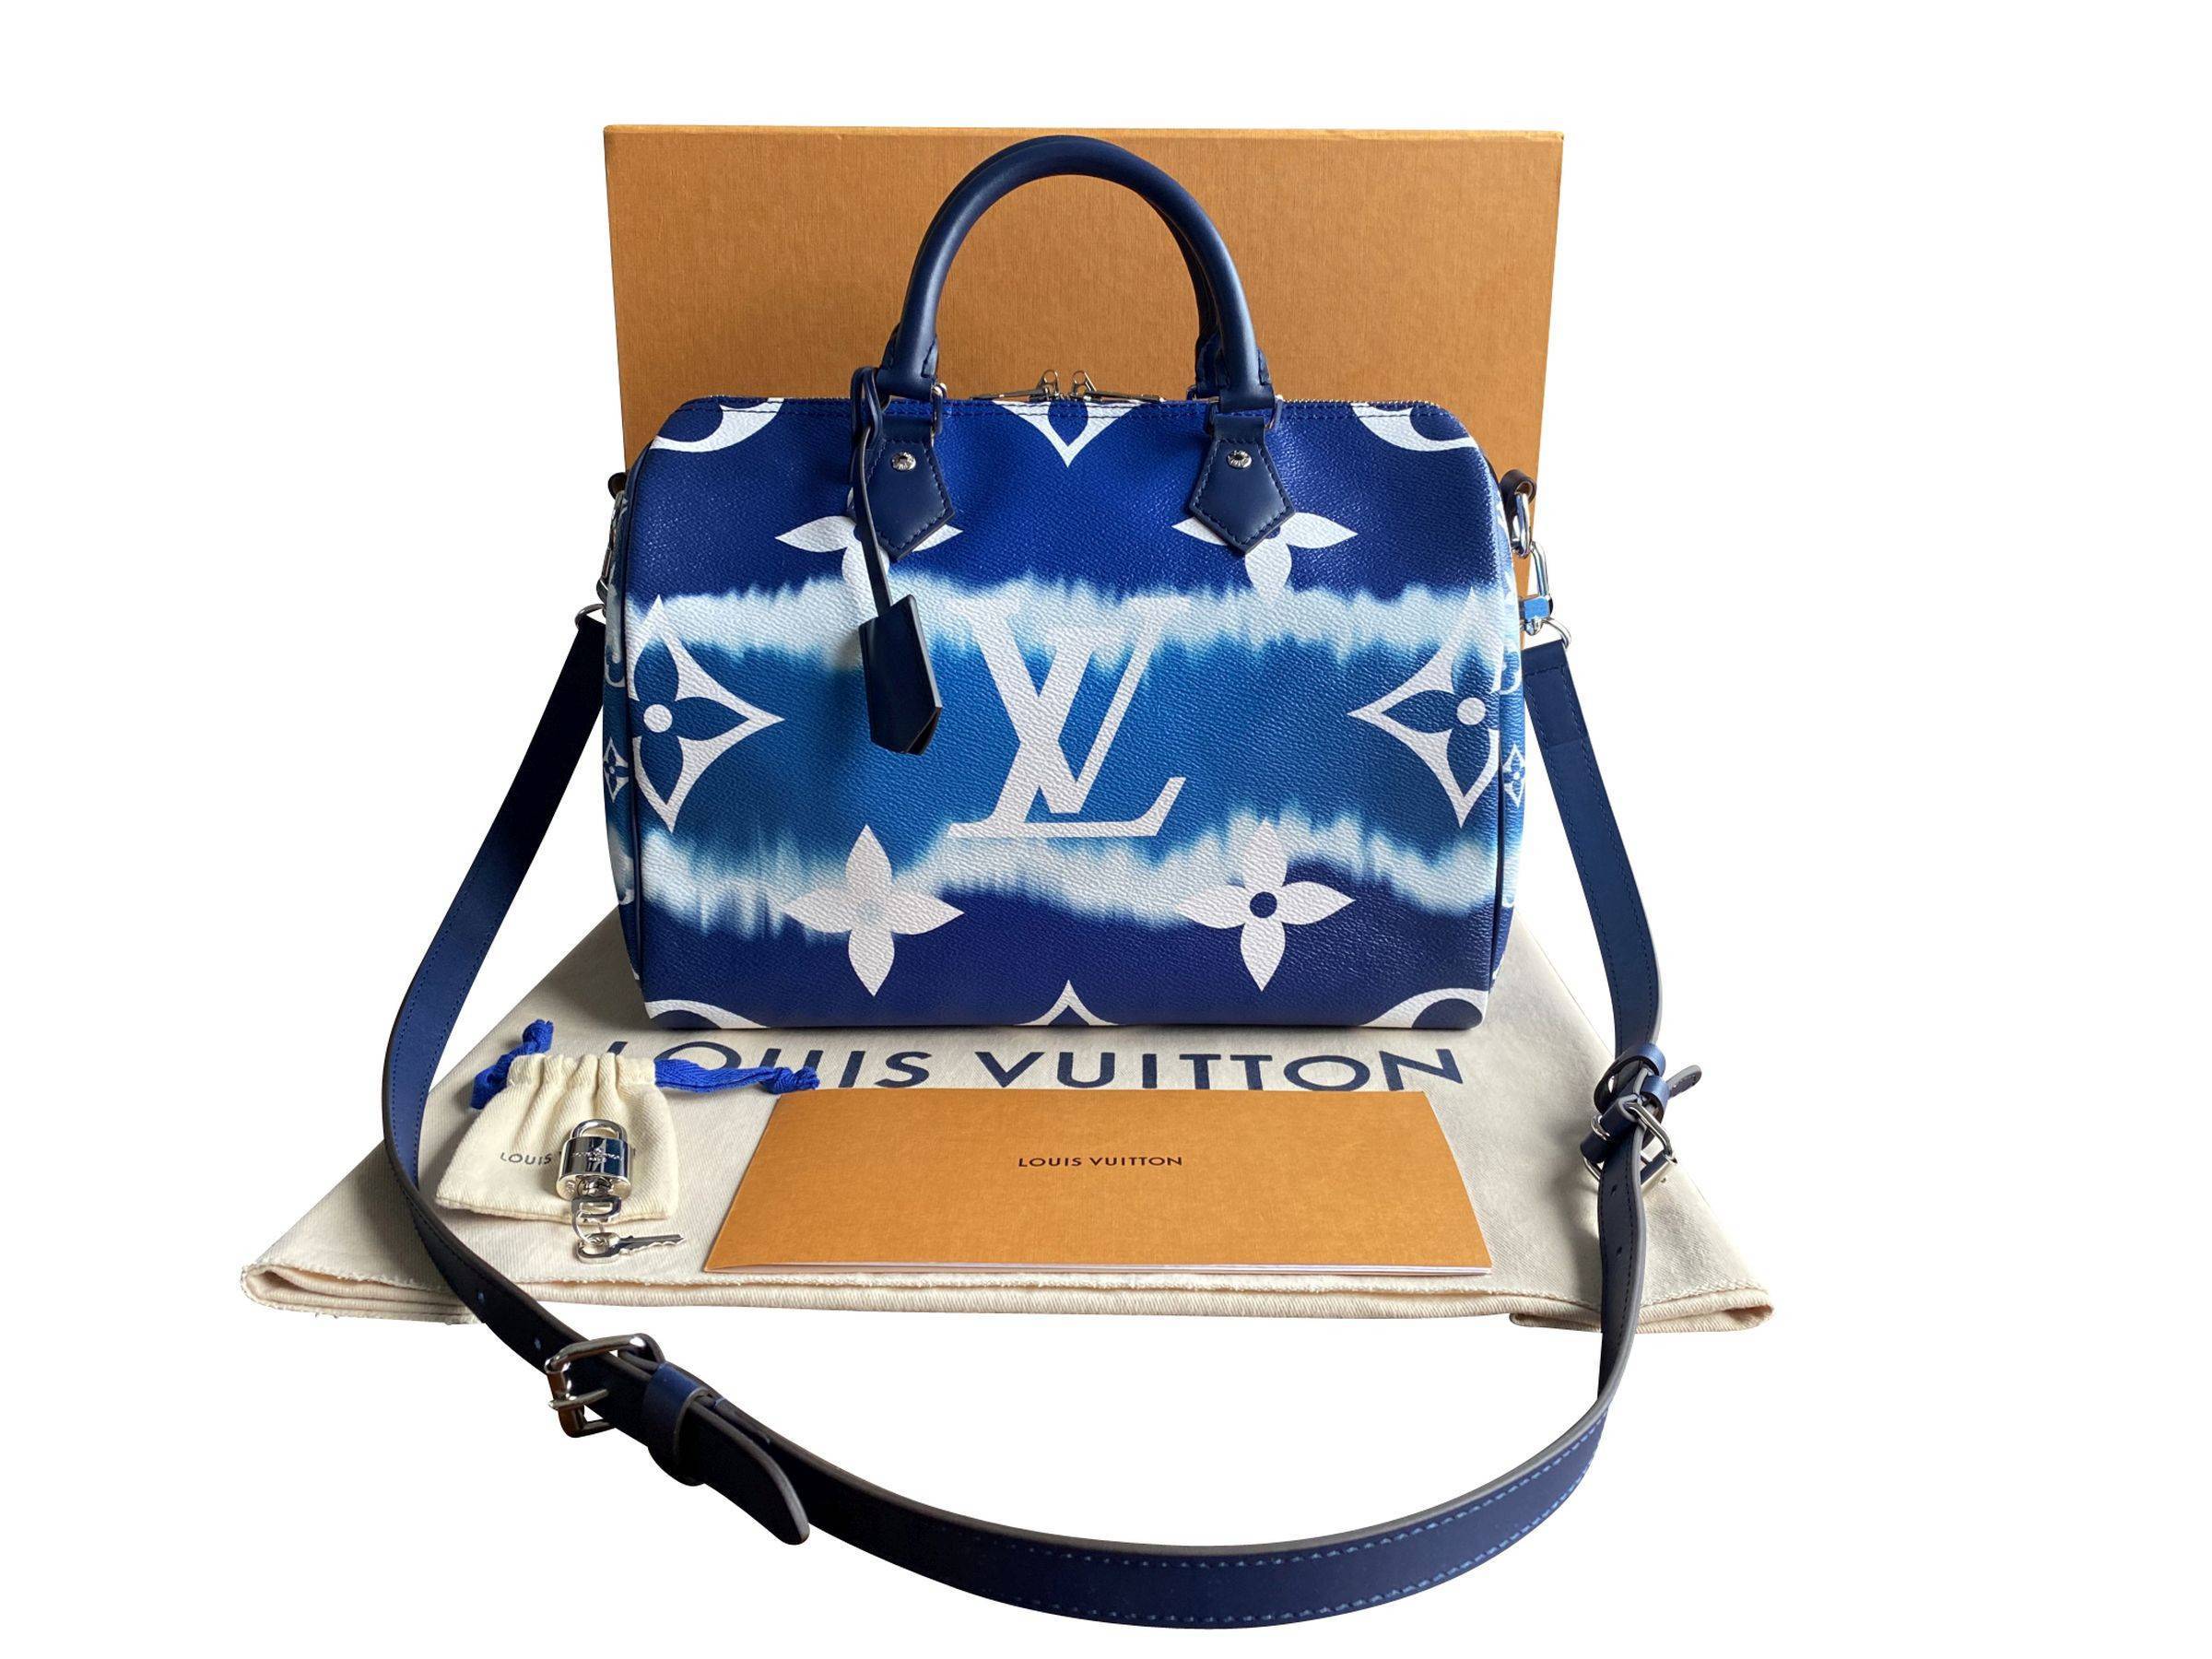 VERKAUFT - Louis Vuitton Tasche Speedy 30 Monogram Escale blau mit